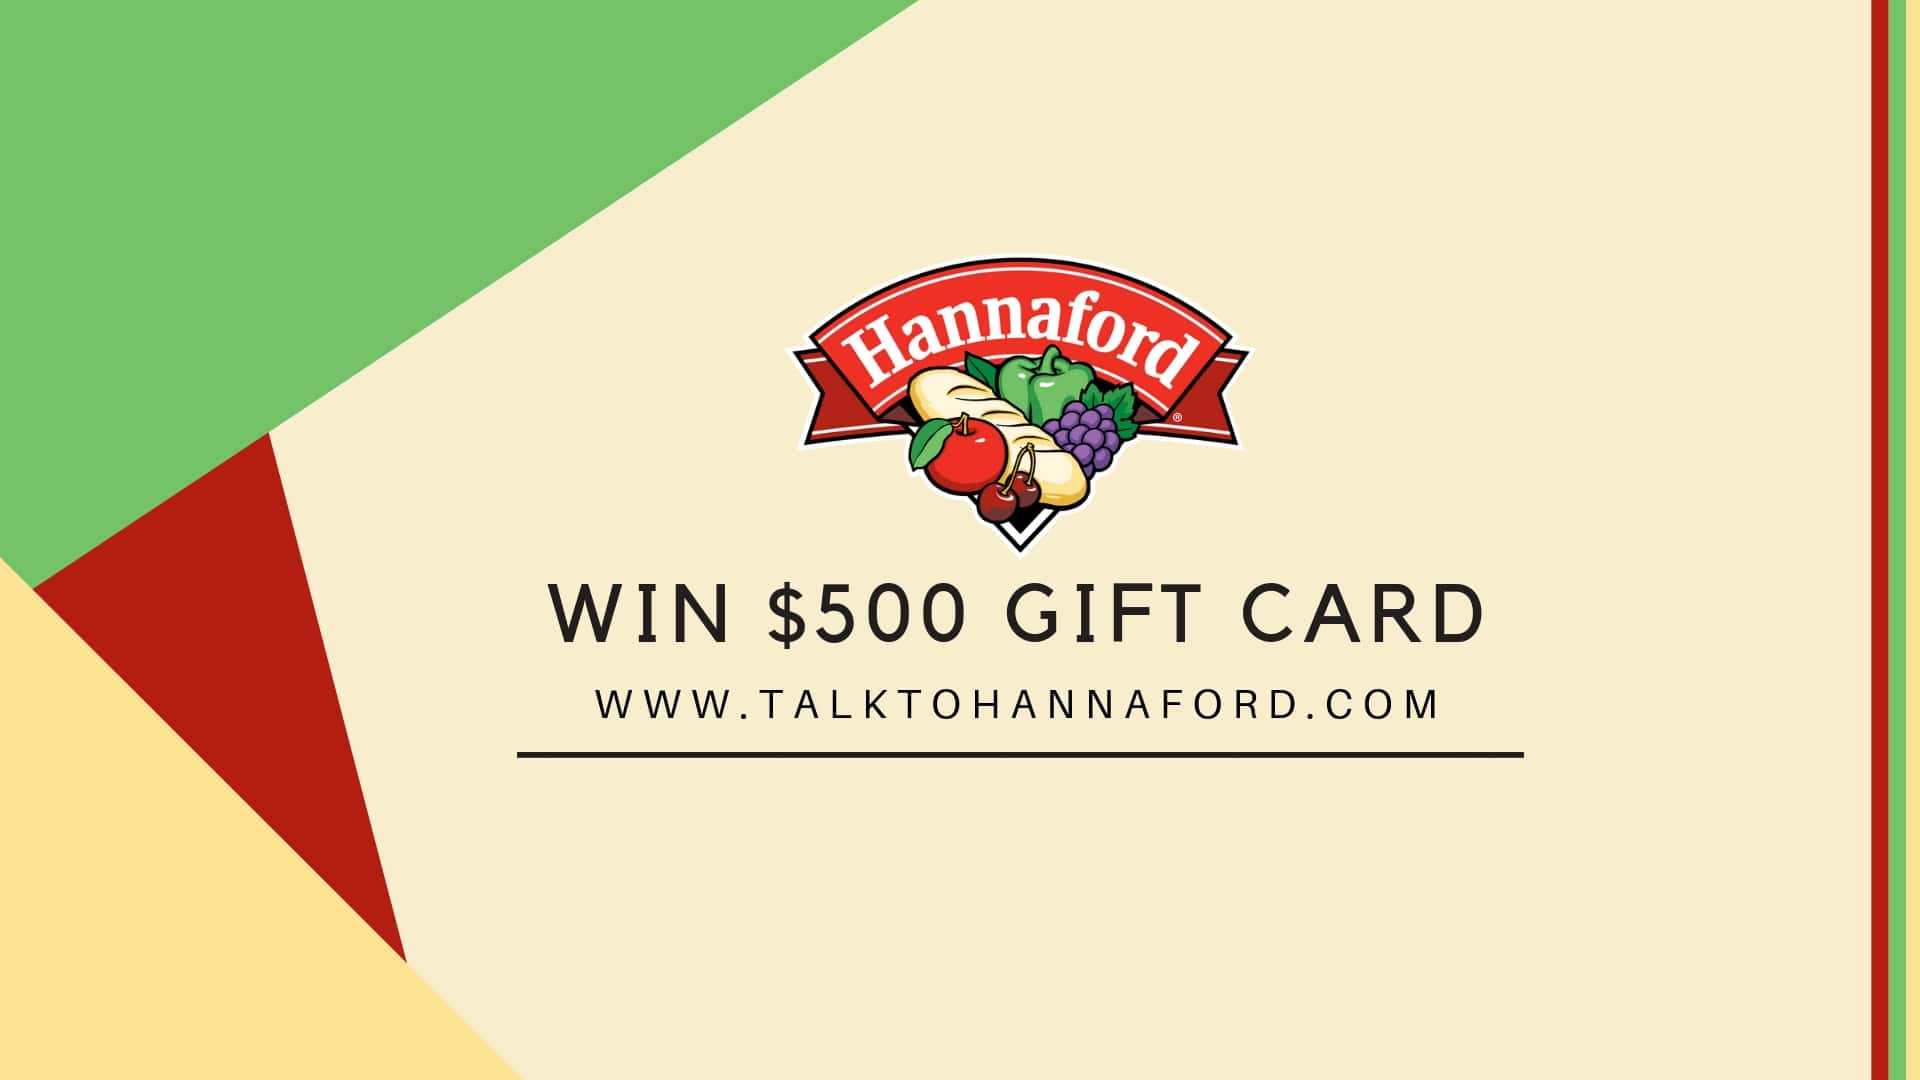 www.talktohannaford.com | Take Hannaford Survey - Win $500